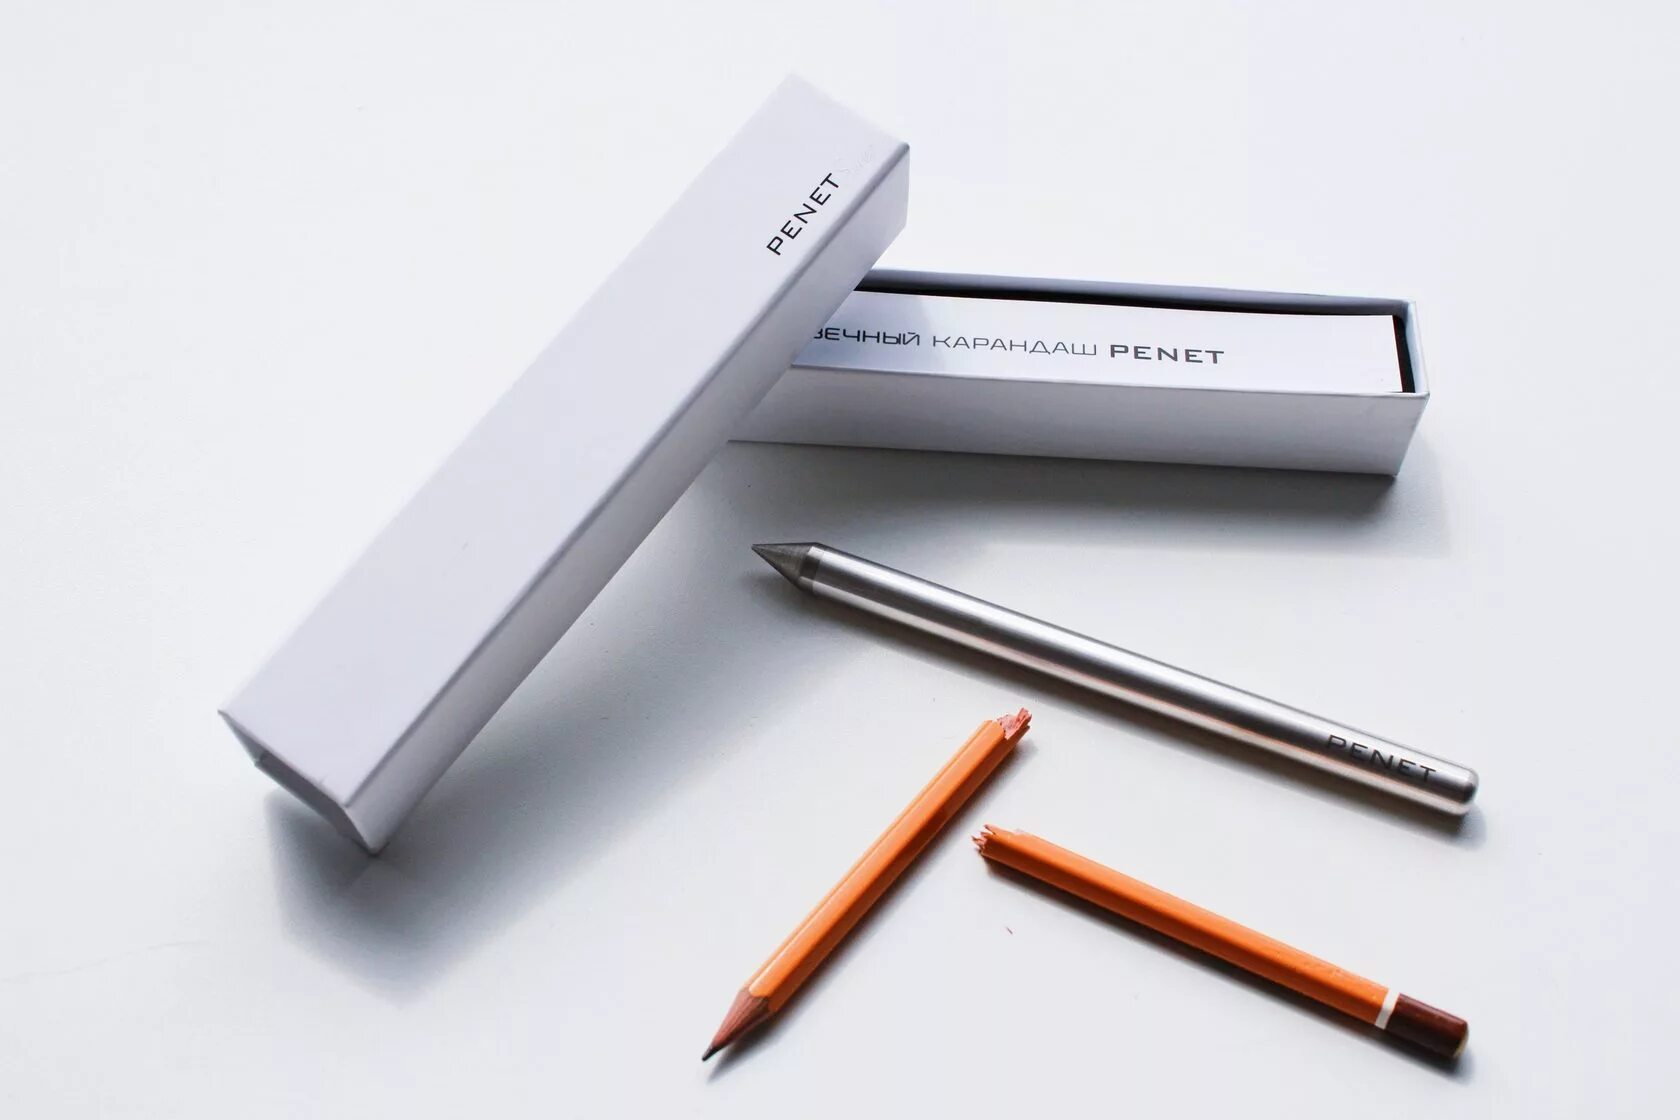 Вечный карандаш penet. Грифель для вечного карандаша. Металлический карандаш вечный. Бесконечный карандаш металлический.